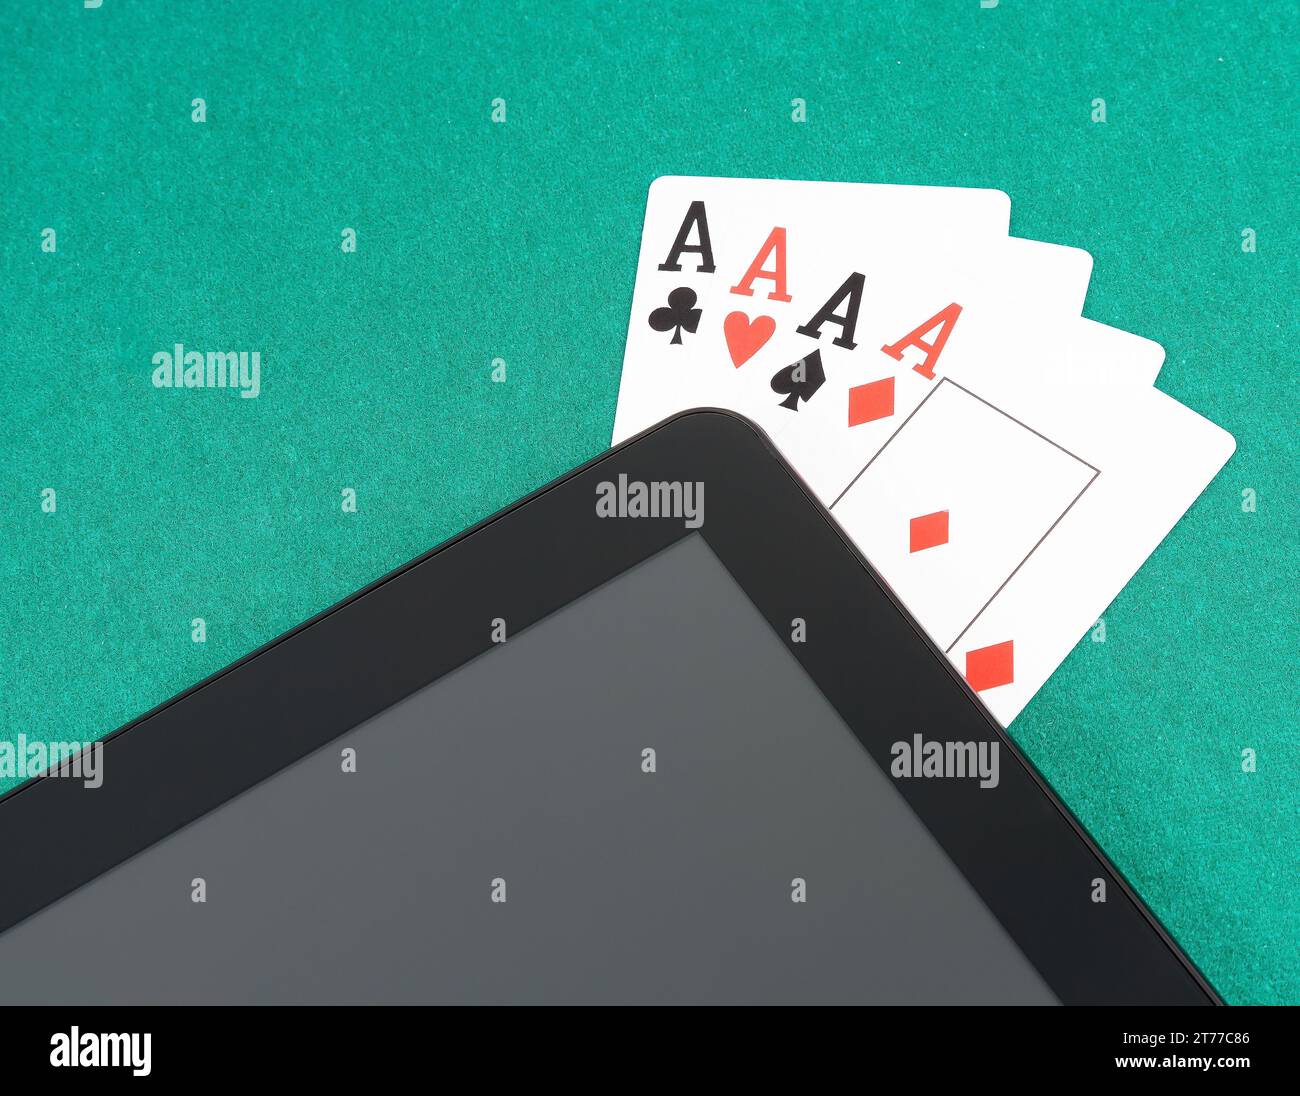 Pokerkarten in der Nähe eines digitalen Tablet-pcs auf grünem Tisch, Konzept des Poker online Stockfoto